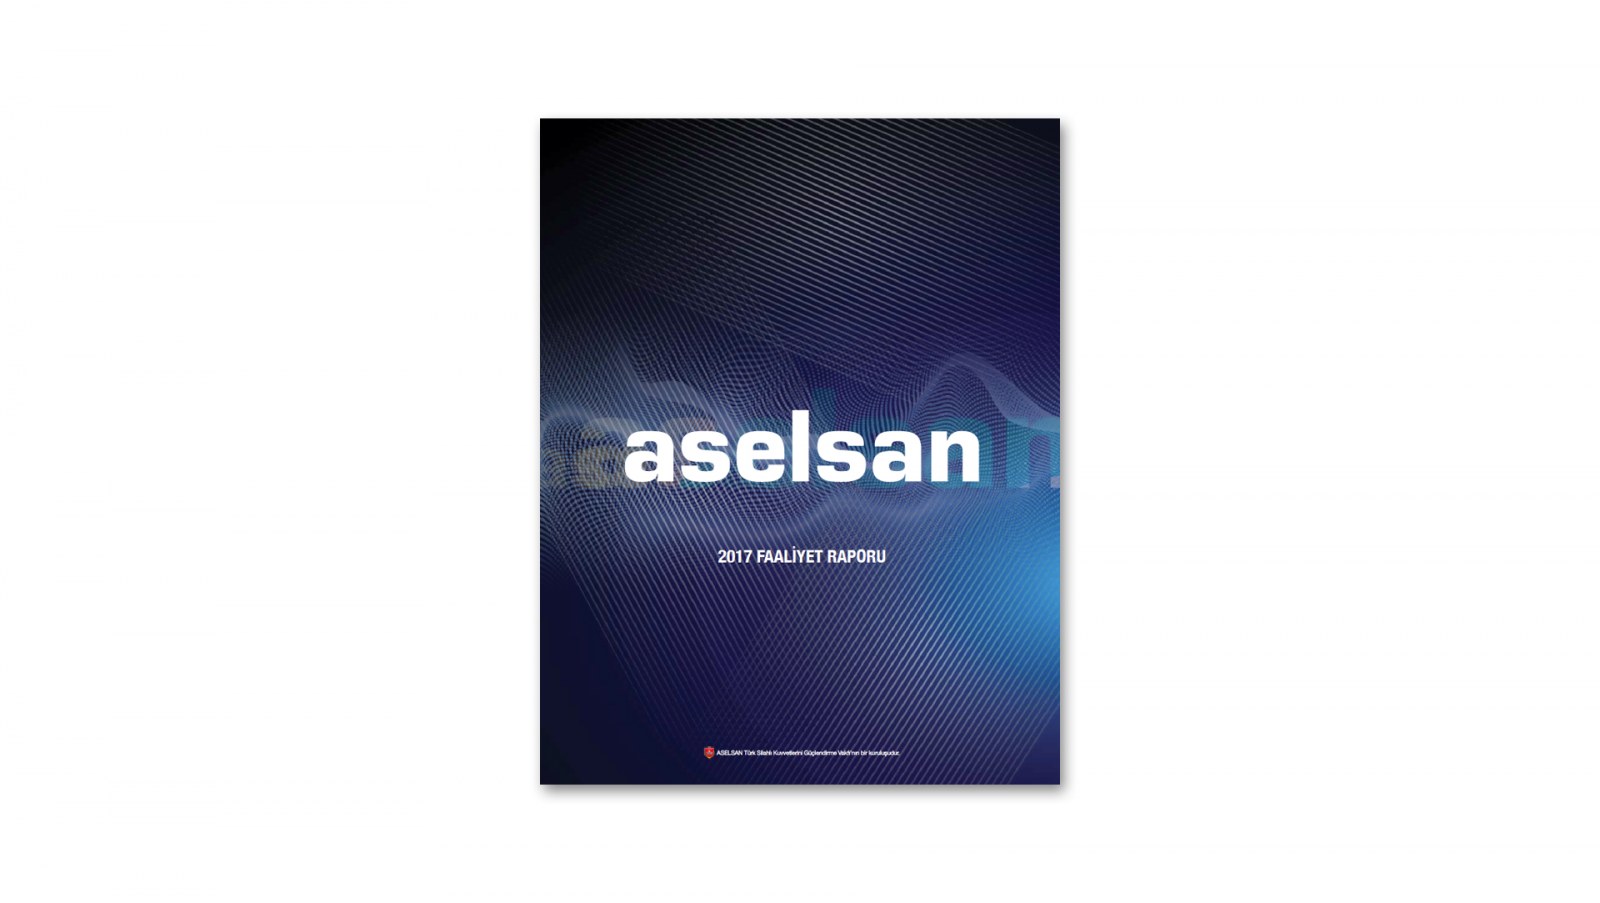 ASELSAN / 2017 Faaliyet Raporu / 2017 Annual Report